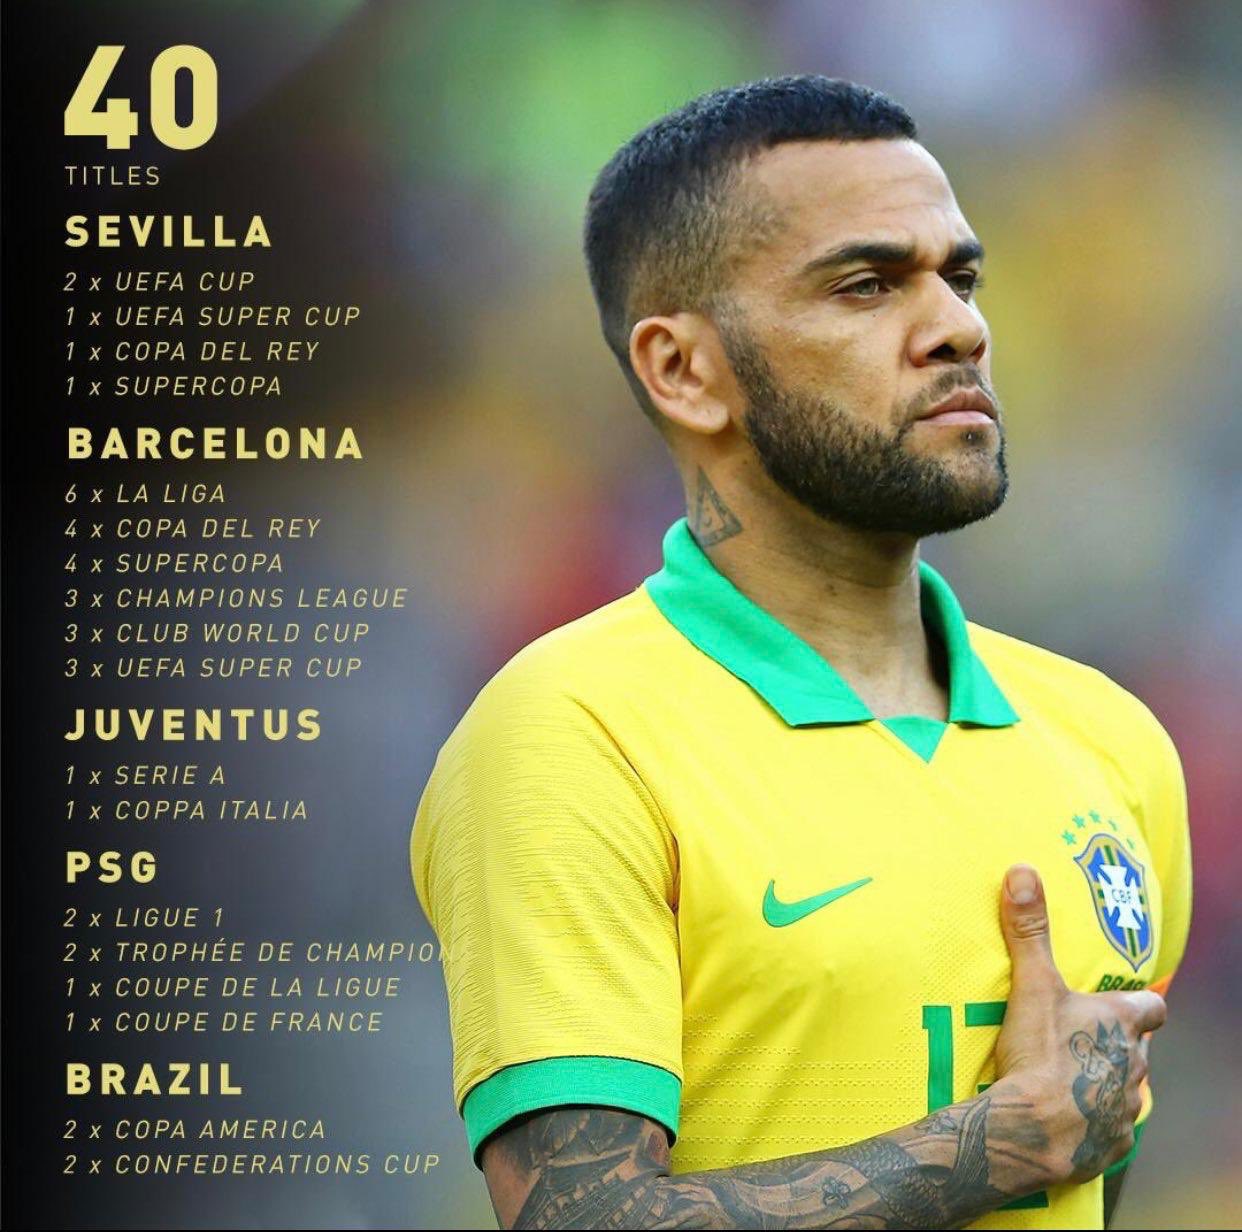 خالد جاسم On Twitter النجم البرازيلي داني ألفيس أكثر لاعب تحقيقا للبطولات في تاريخ كرة القدم بـ 40 لقب البرازيل كوبا أمريكا2019 Https T Co Disqpaw5un